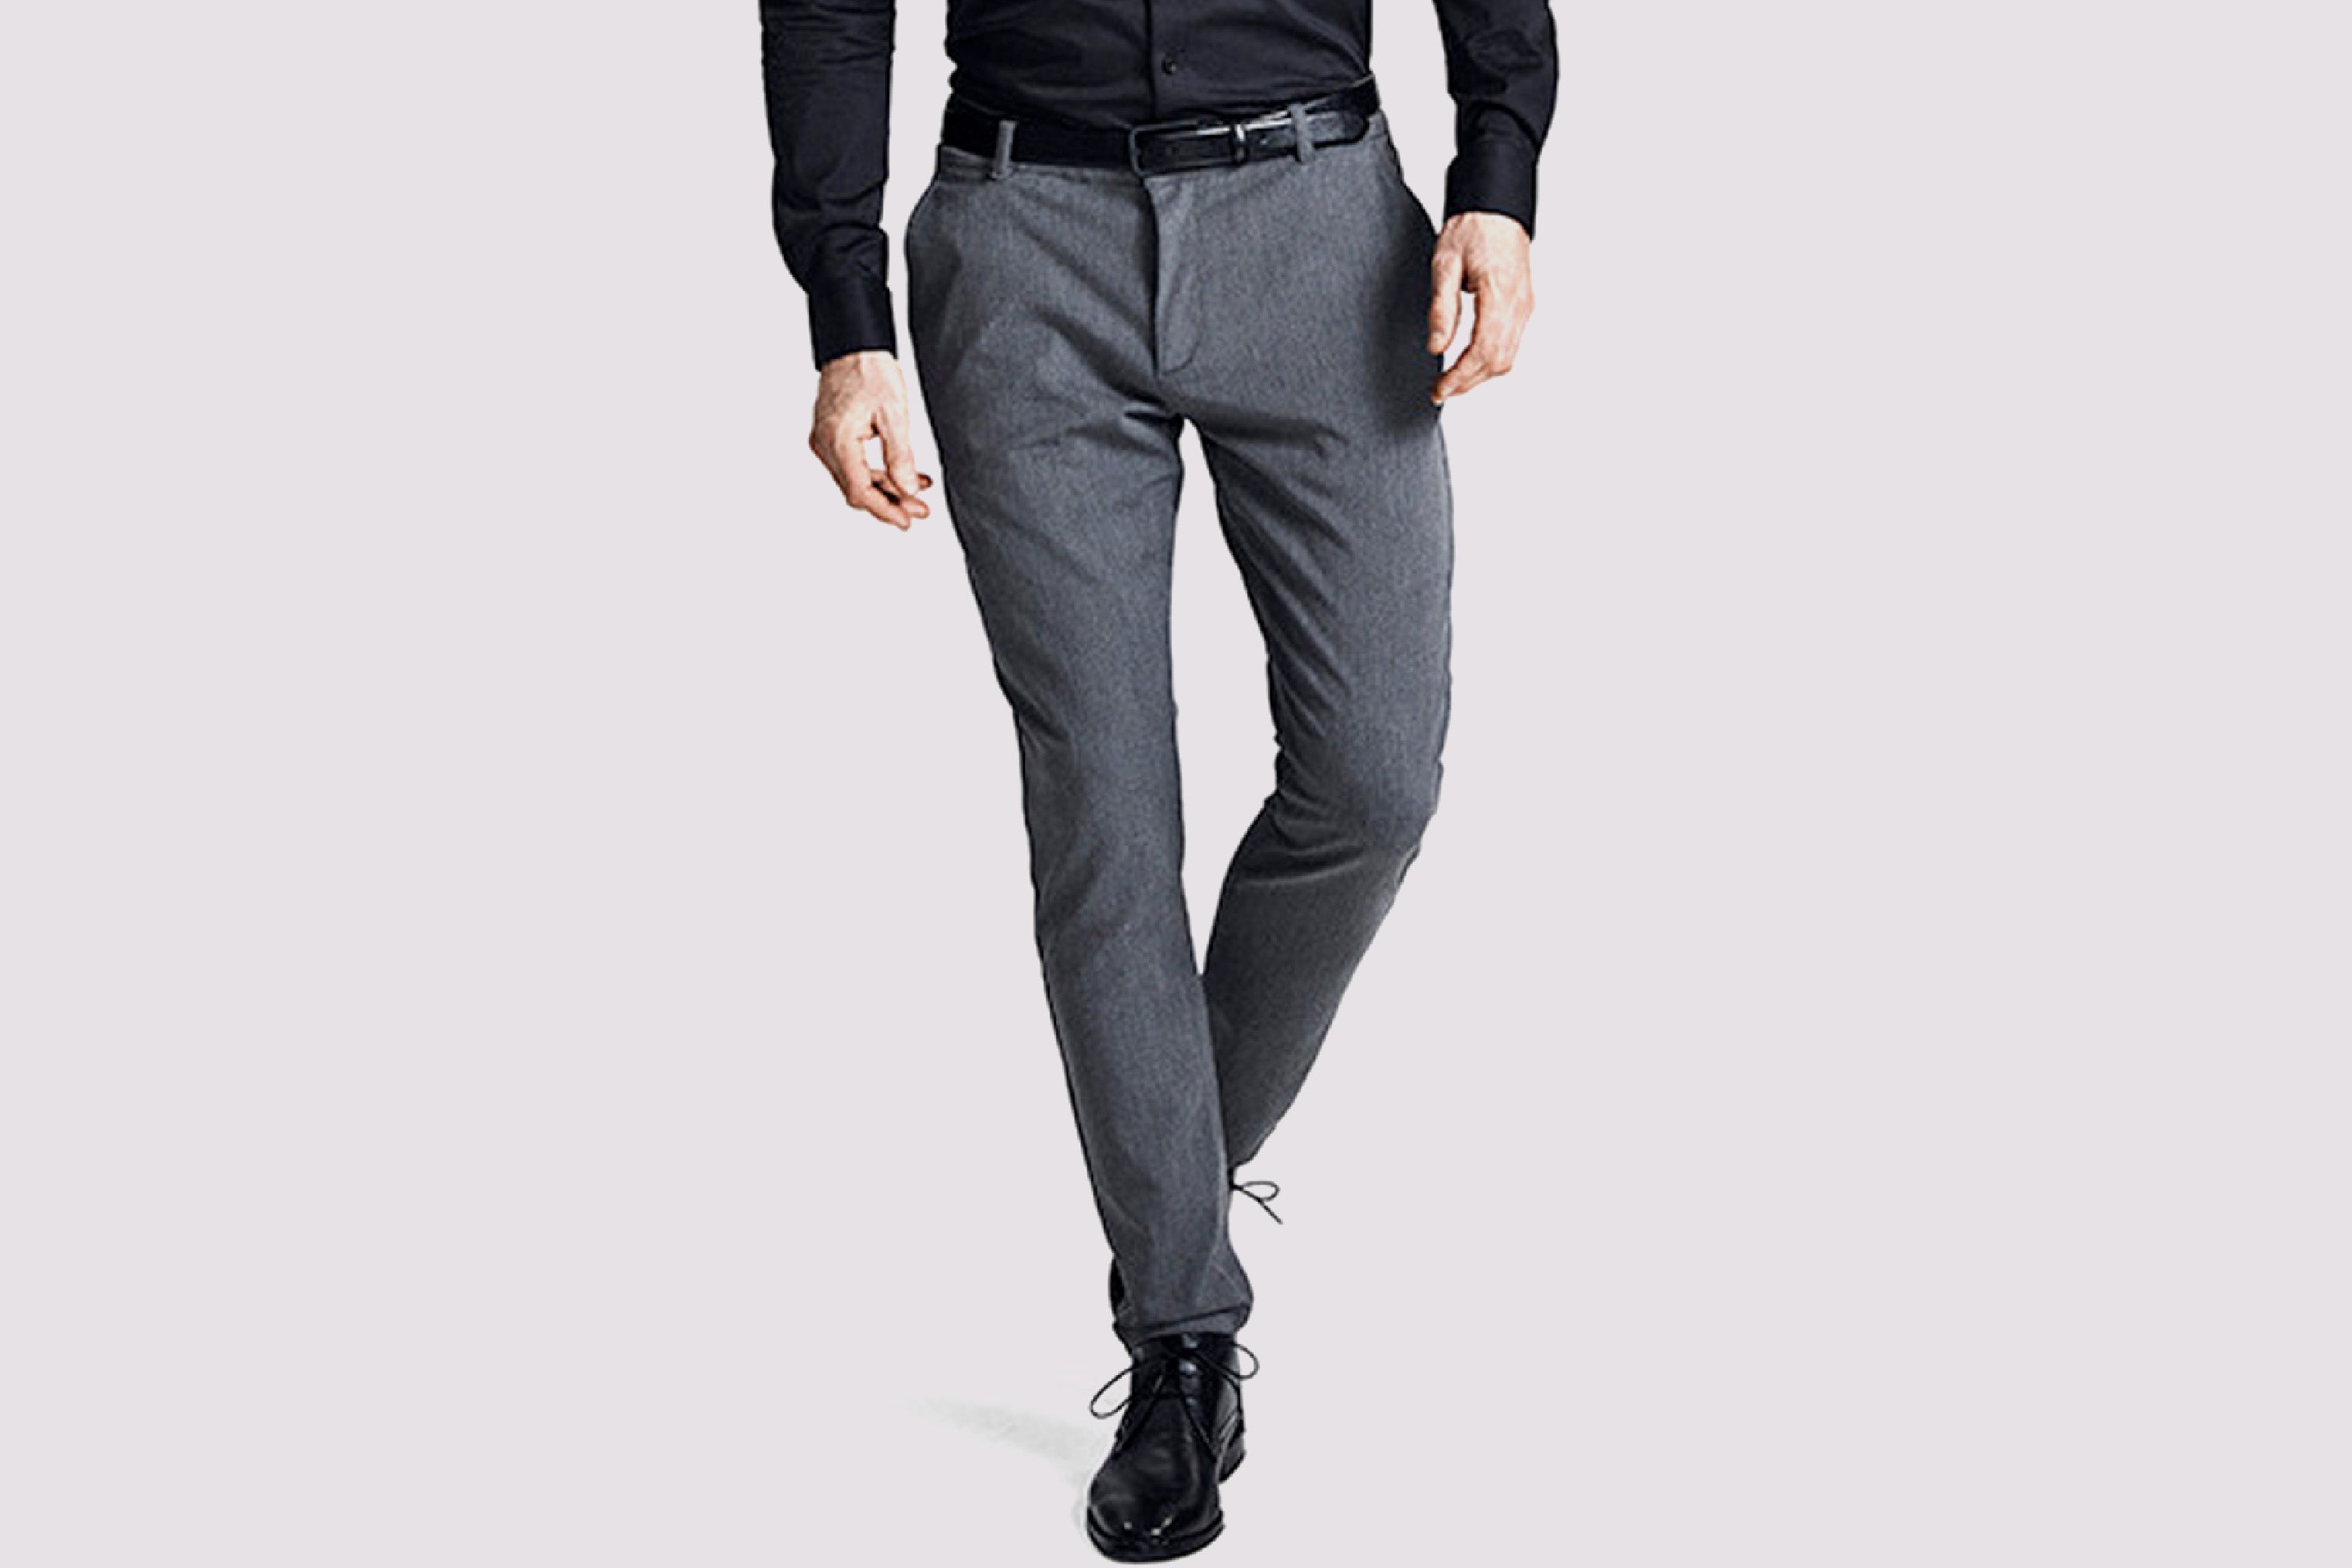 Opnå et stilrent og klassisk look med de perfekte business bukser